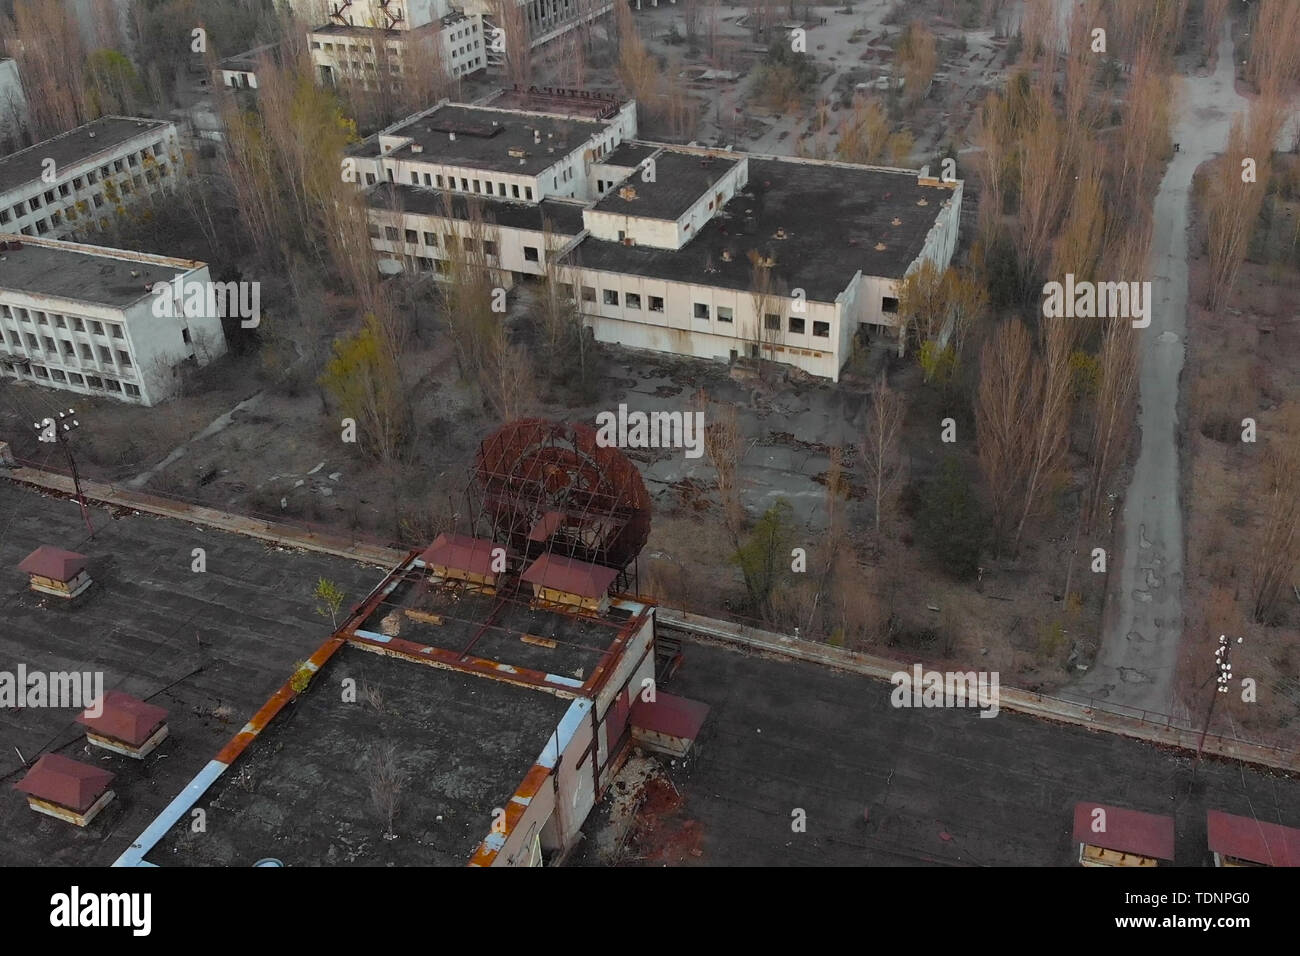 Antenna pripjat panorama cityview oltre il segno di URSS sul tetto dell'edificio. Drone vola sopra il deserto città abbandonate di pripjat, Ucraina. Escl Foto Stock